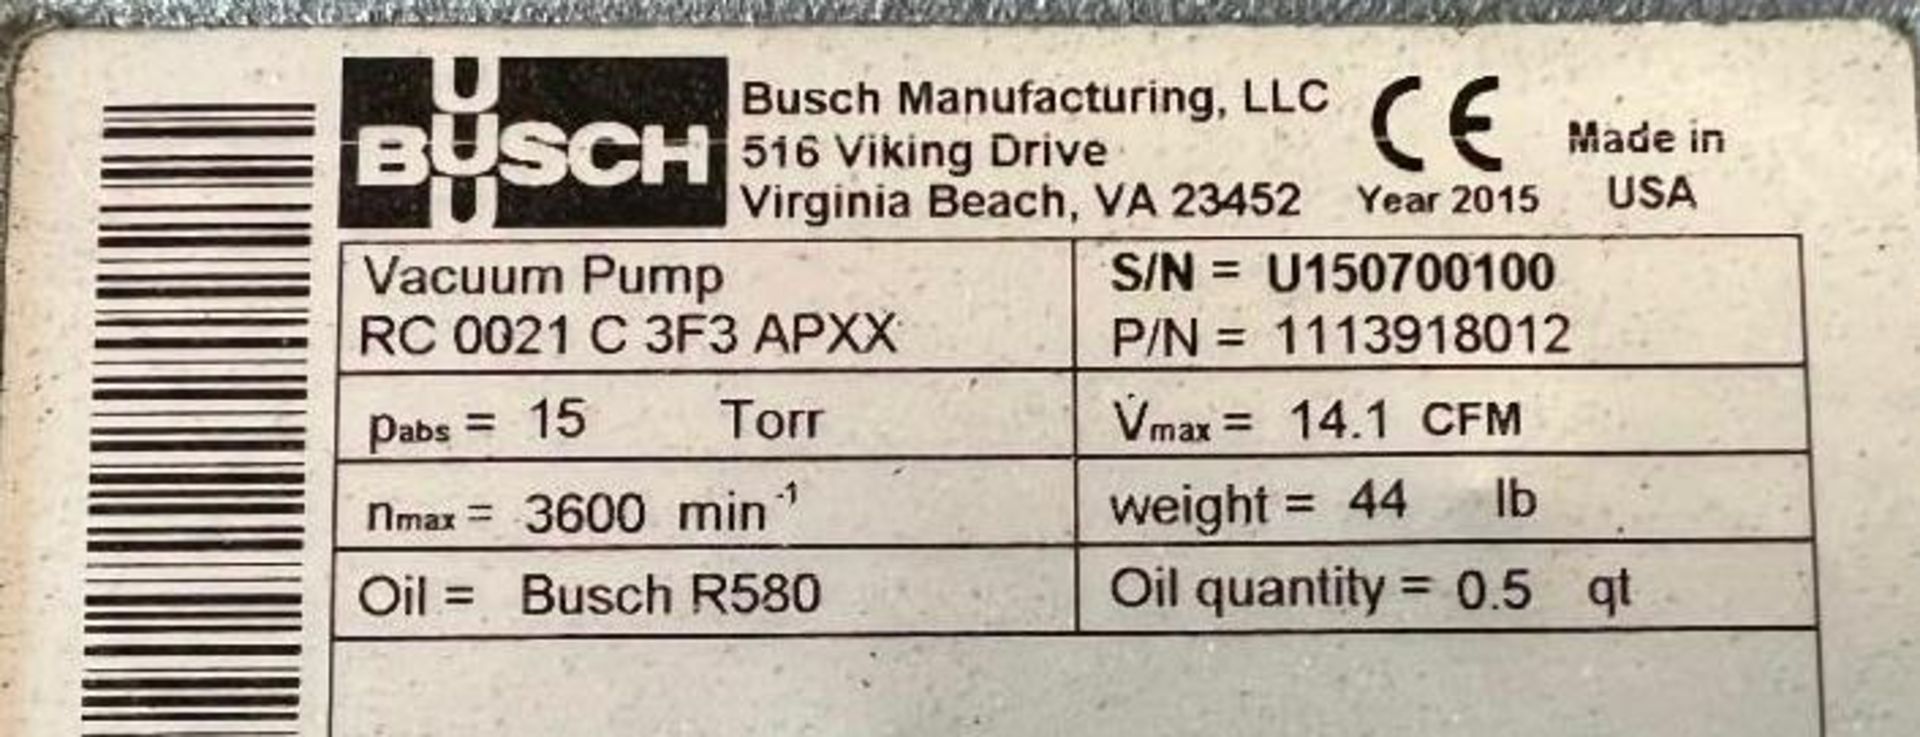 Busch Vaccum Pump - Image 3 of 3